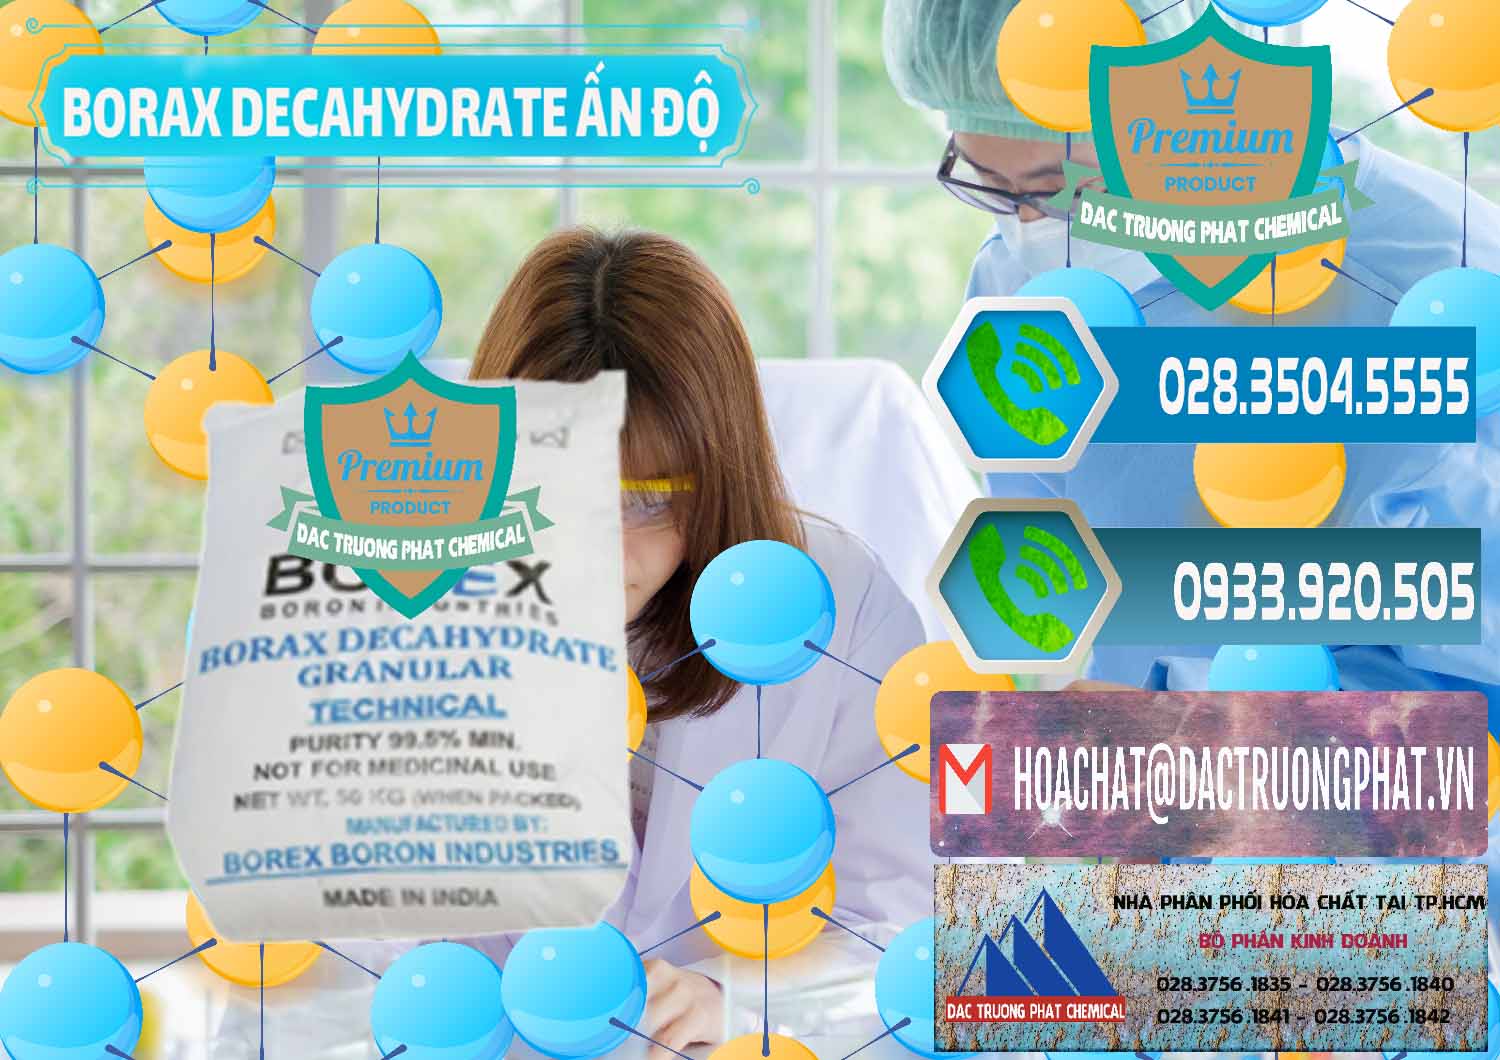 Chuyên bán ( phân phối ) Borax Decahydrate Ấn Độ India - 0449 - Chuyên cung cấp ( bán ) hóa chất tại TP.HCM - congtyhoachat.net